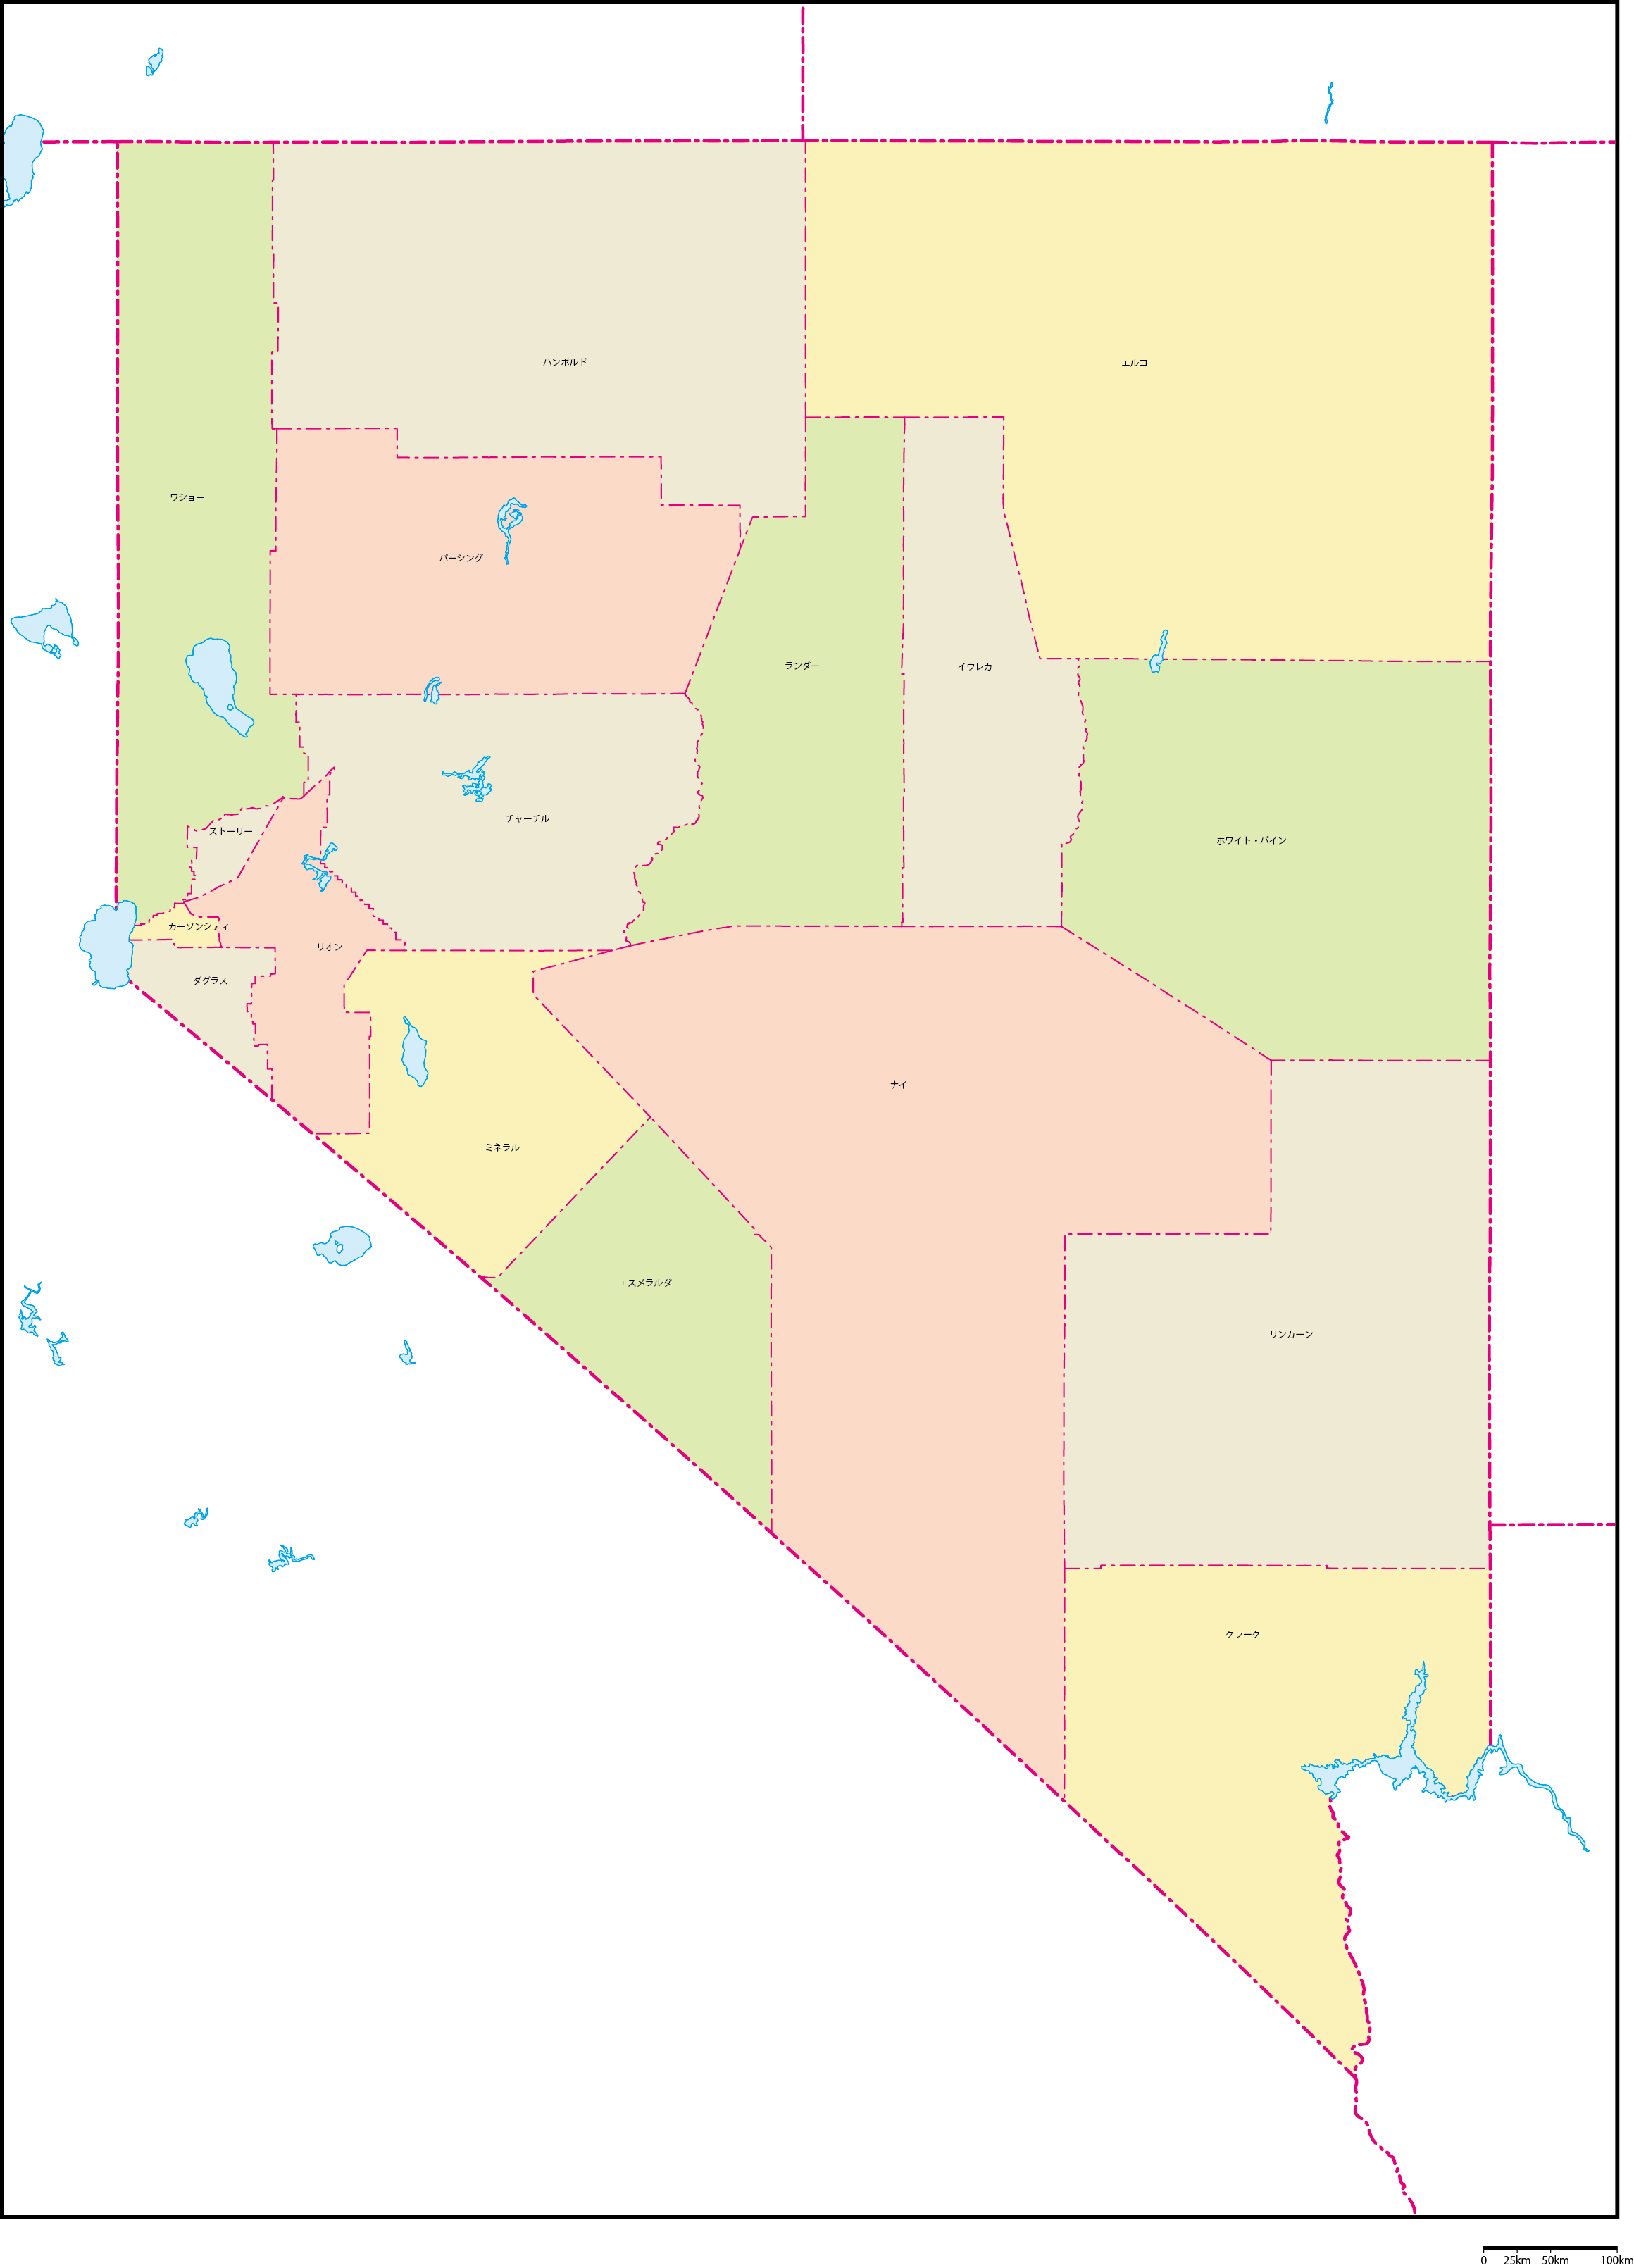 ネバダ州郡色分け地図郡名あり(日本語)フリーデータの画像